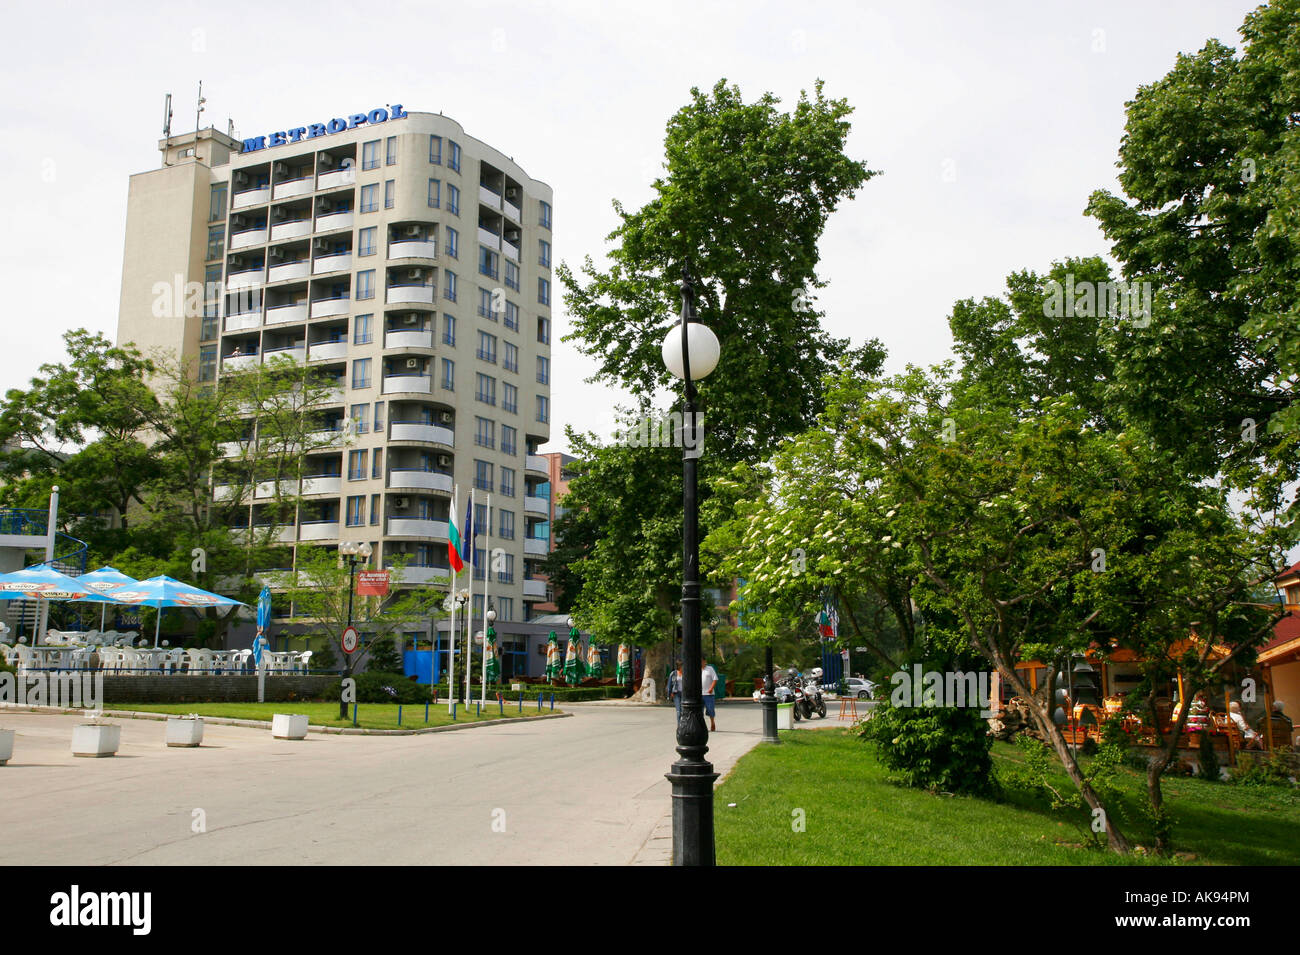 El Hotel Metropol / Varna Foto de stock